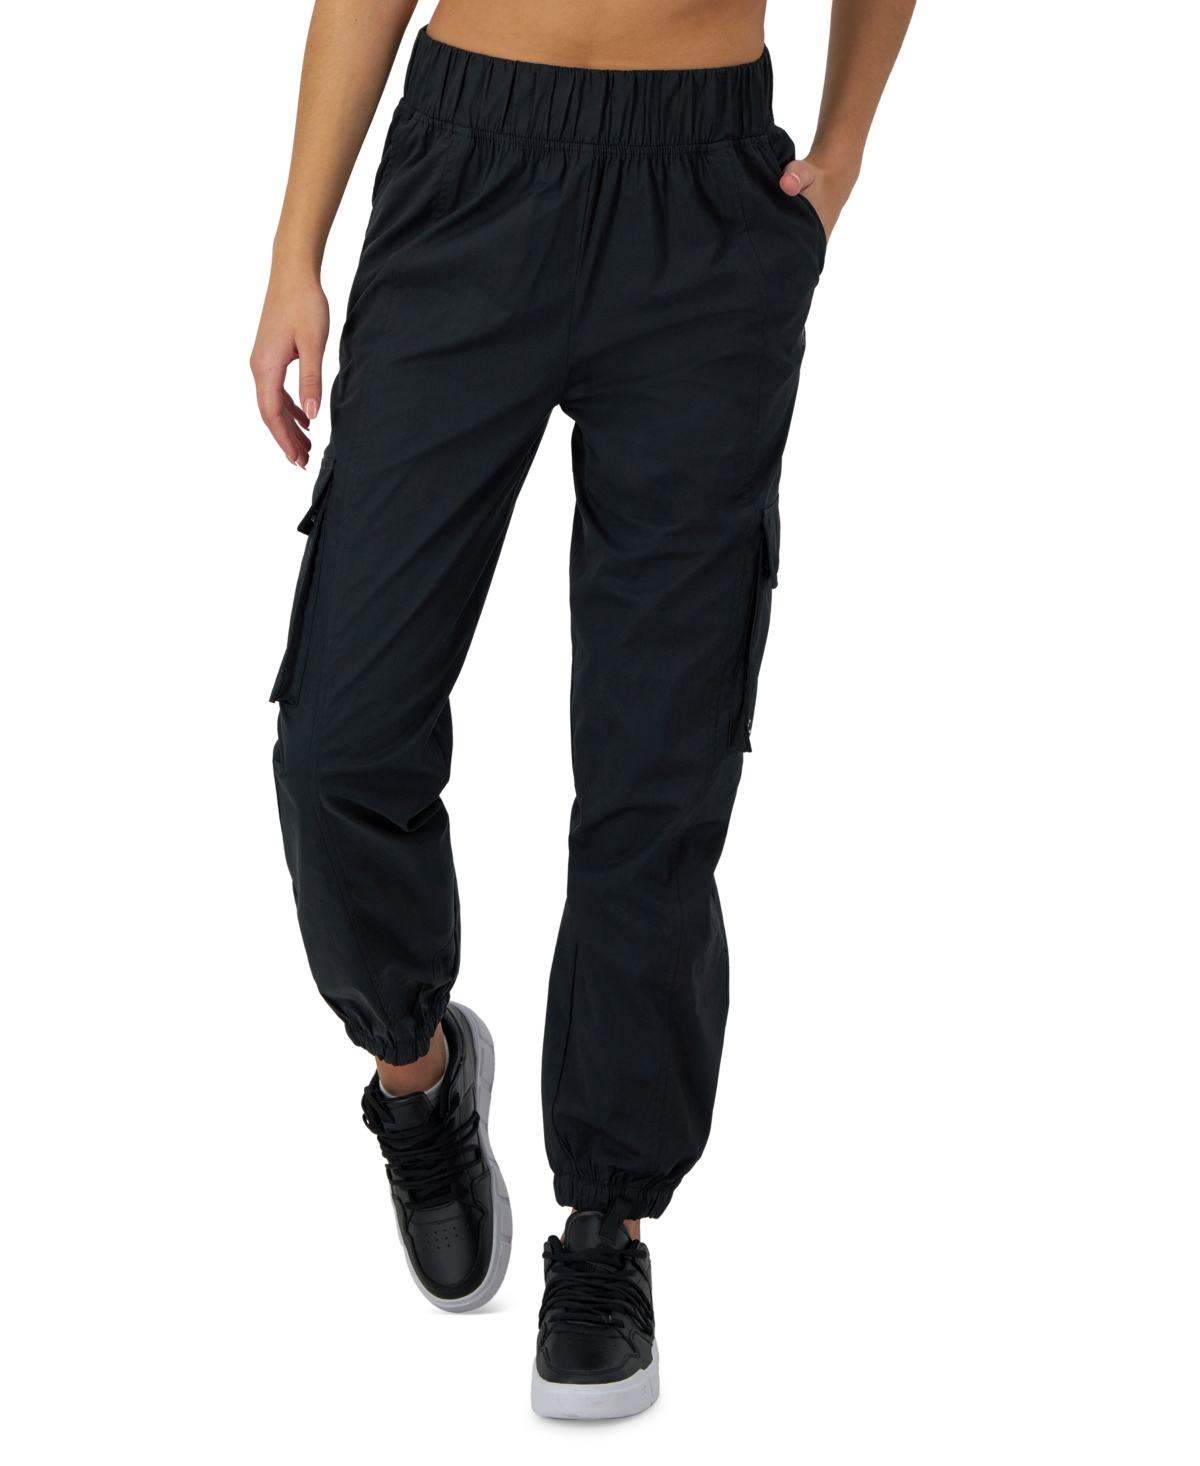 Women's Full-Length Mid-Rise Cargo Pants - Black